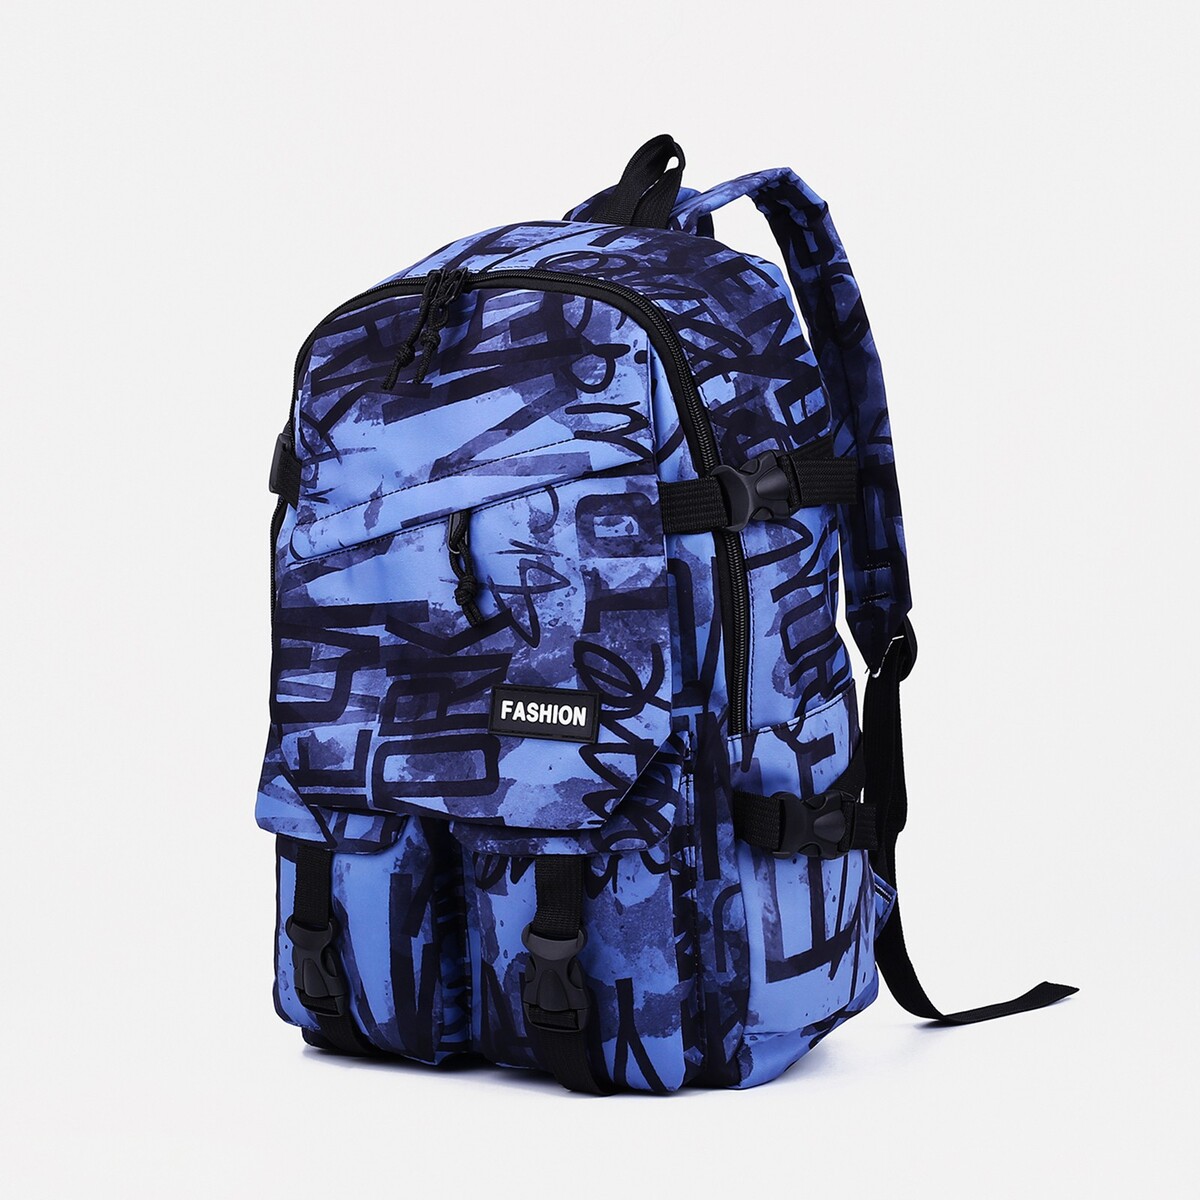 Рюкзак молодежный из текстиля на молнии, 3 кармана, цвет синий